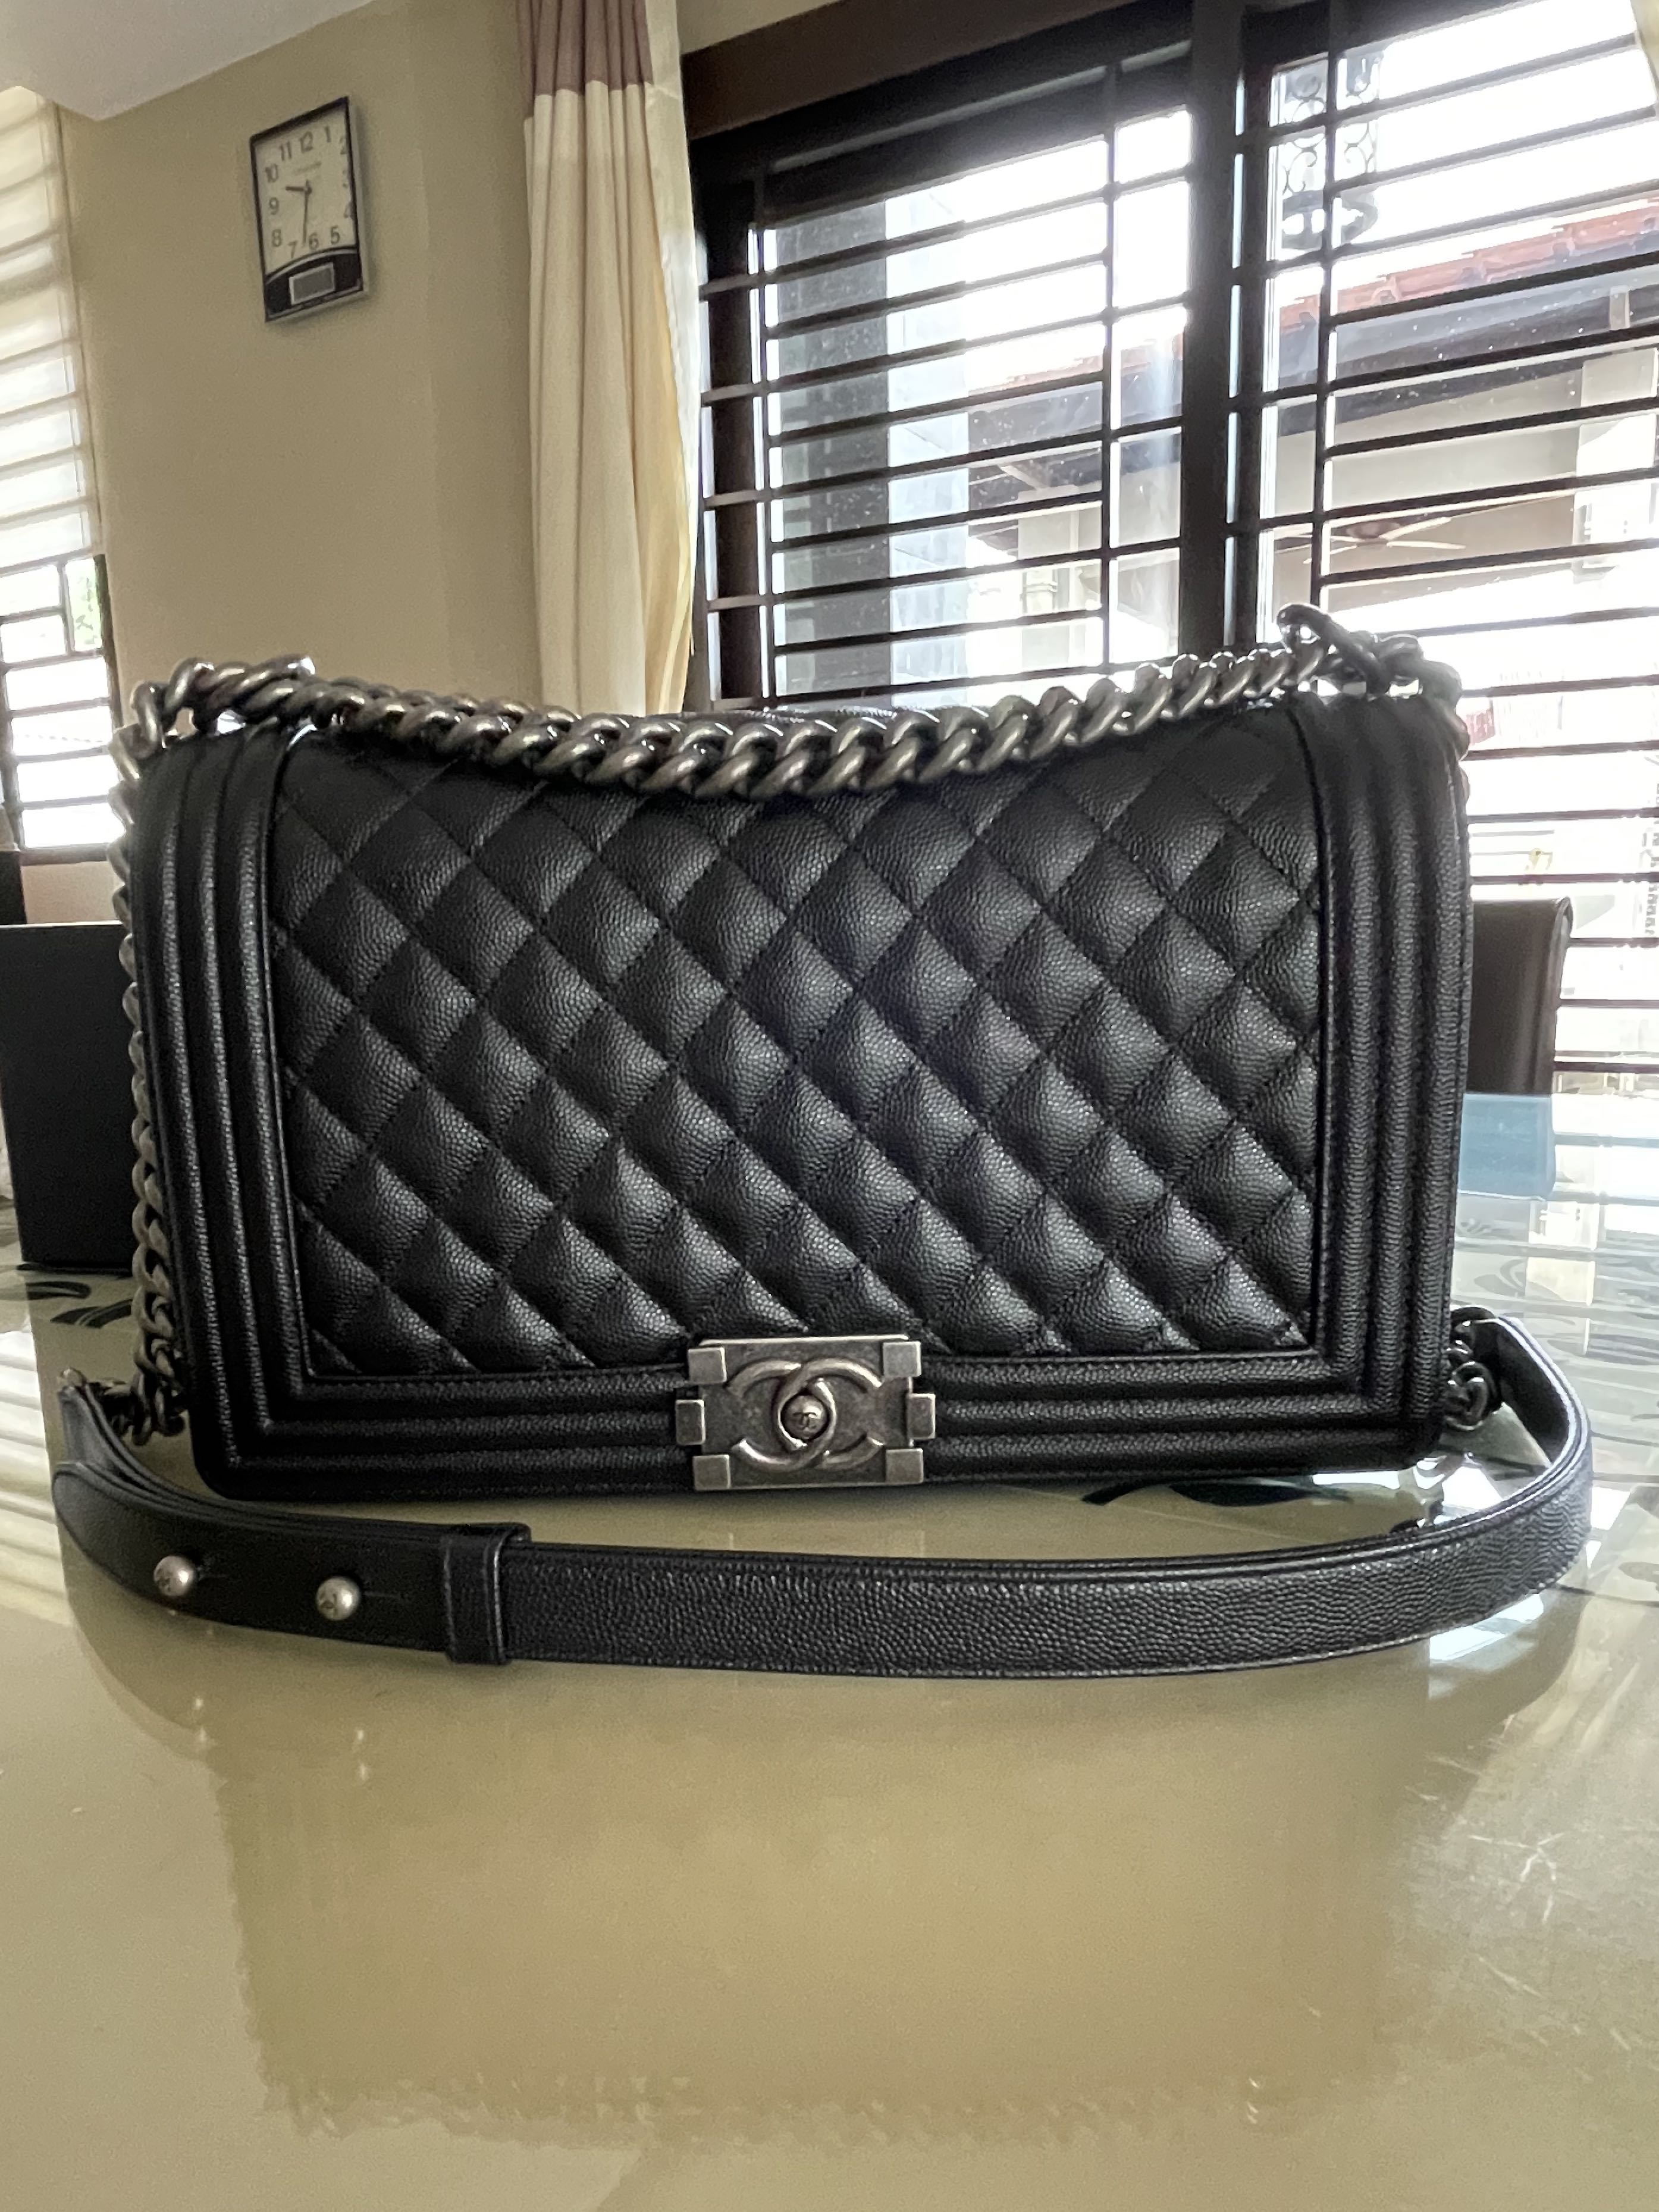 香奈儿下有许多产品,香奈儿Chanel有哪些经典款包包是保值的?